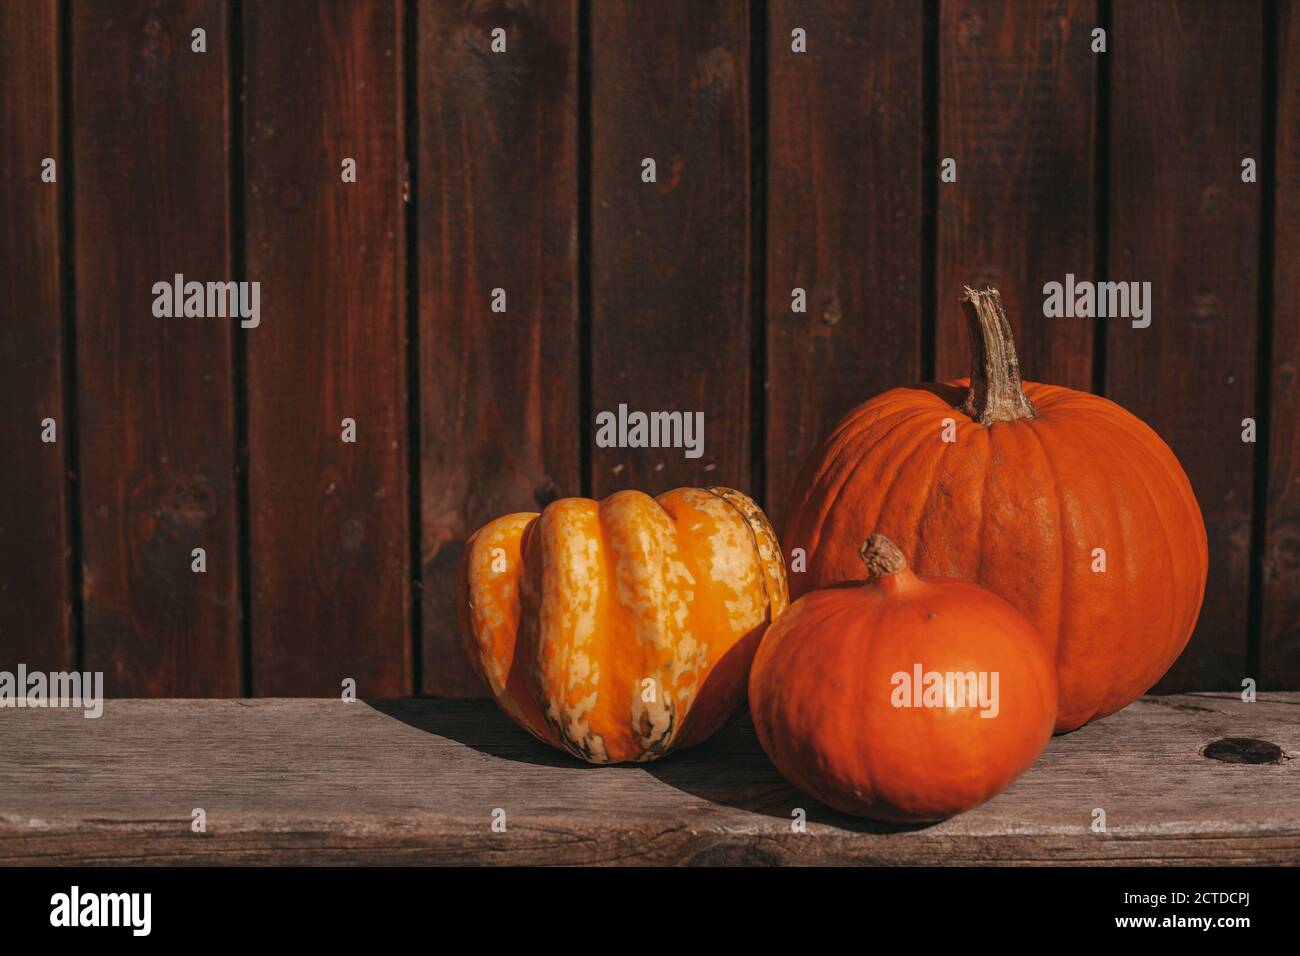 Trois citrouilles orange sur un banc en bois rustique. Arrière-plan en bois. Concept Hello Autumn. Thanksgiving, automne, automne concept. Banque D'Images